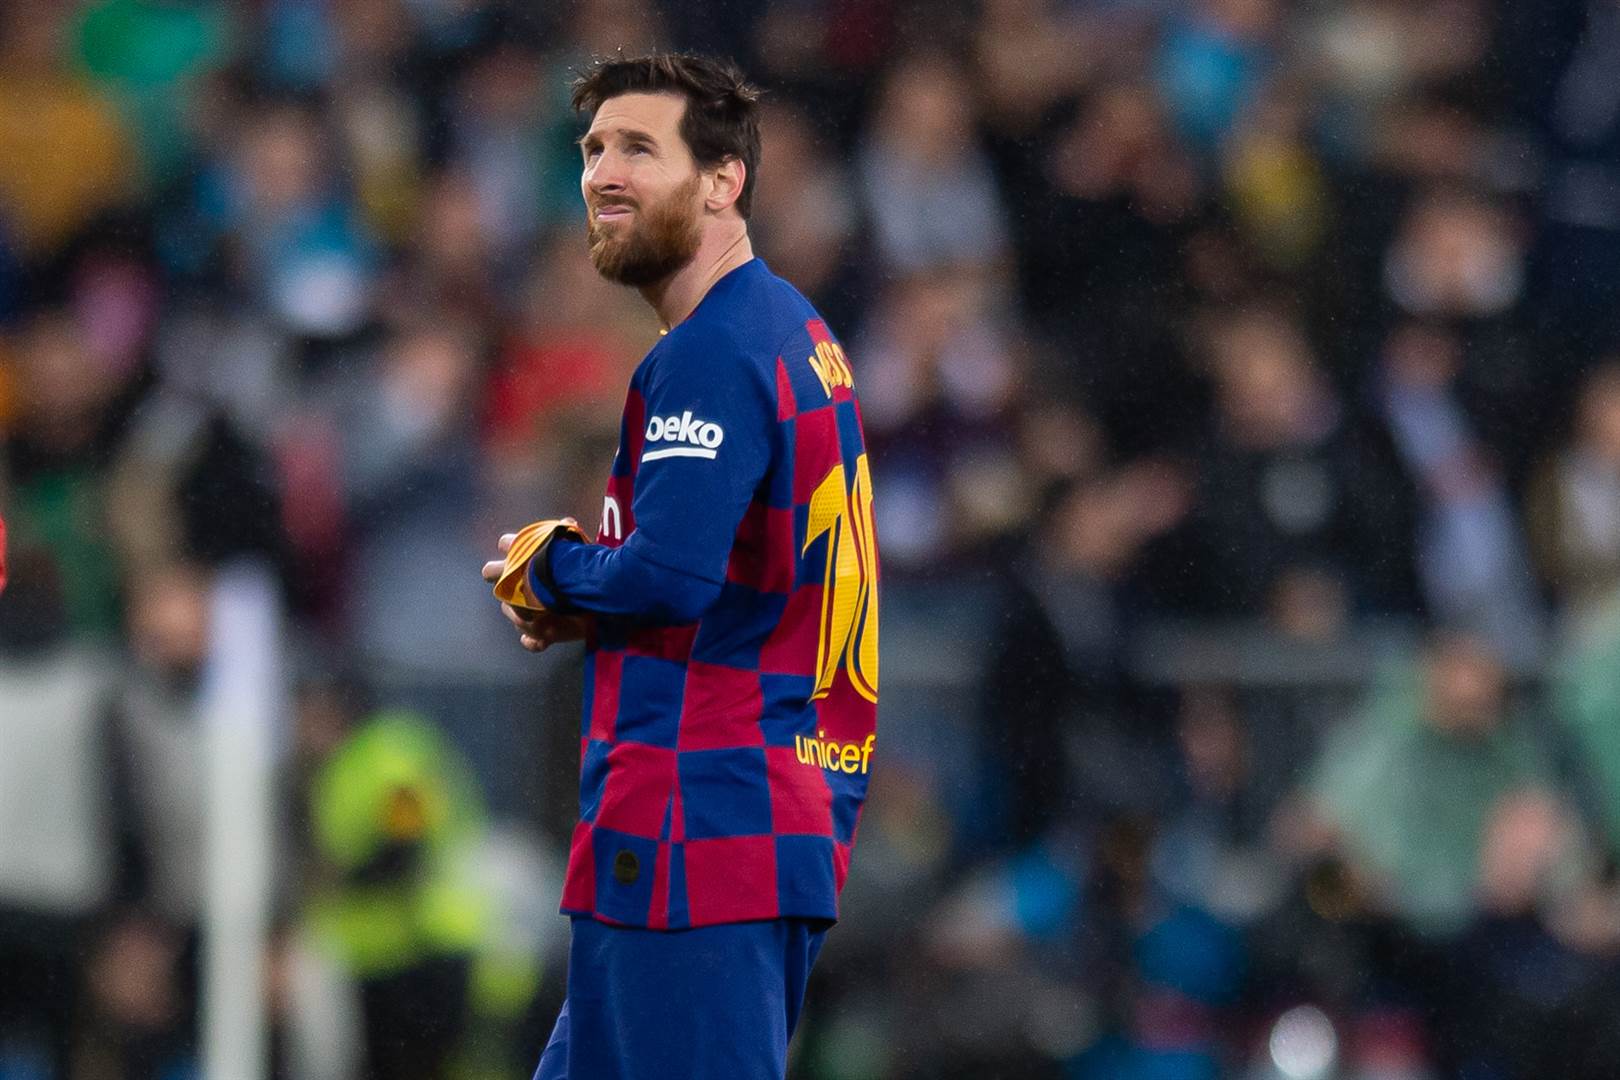 21 - Lionel Messi (FC Barcelona) - €100.2million